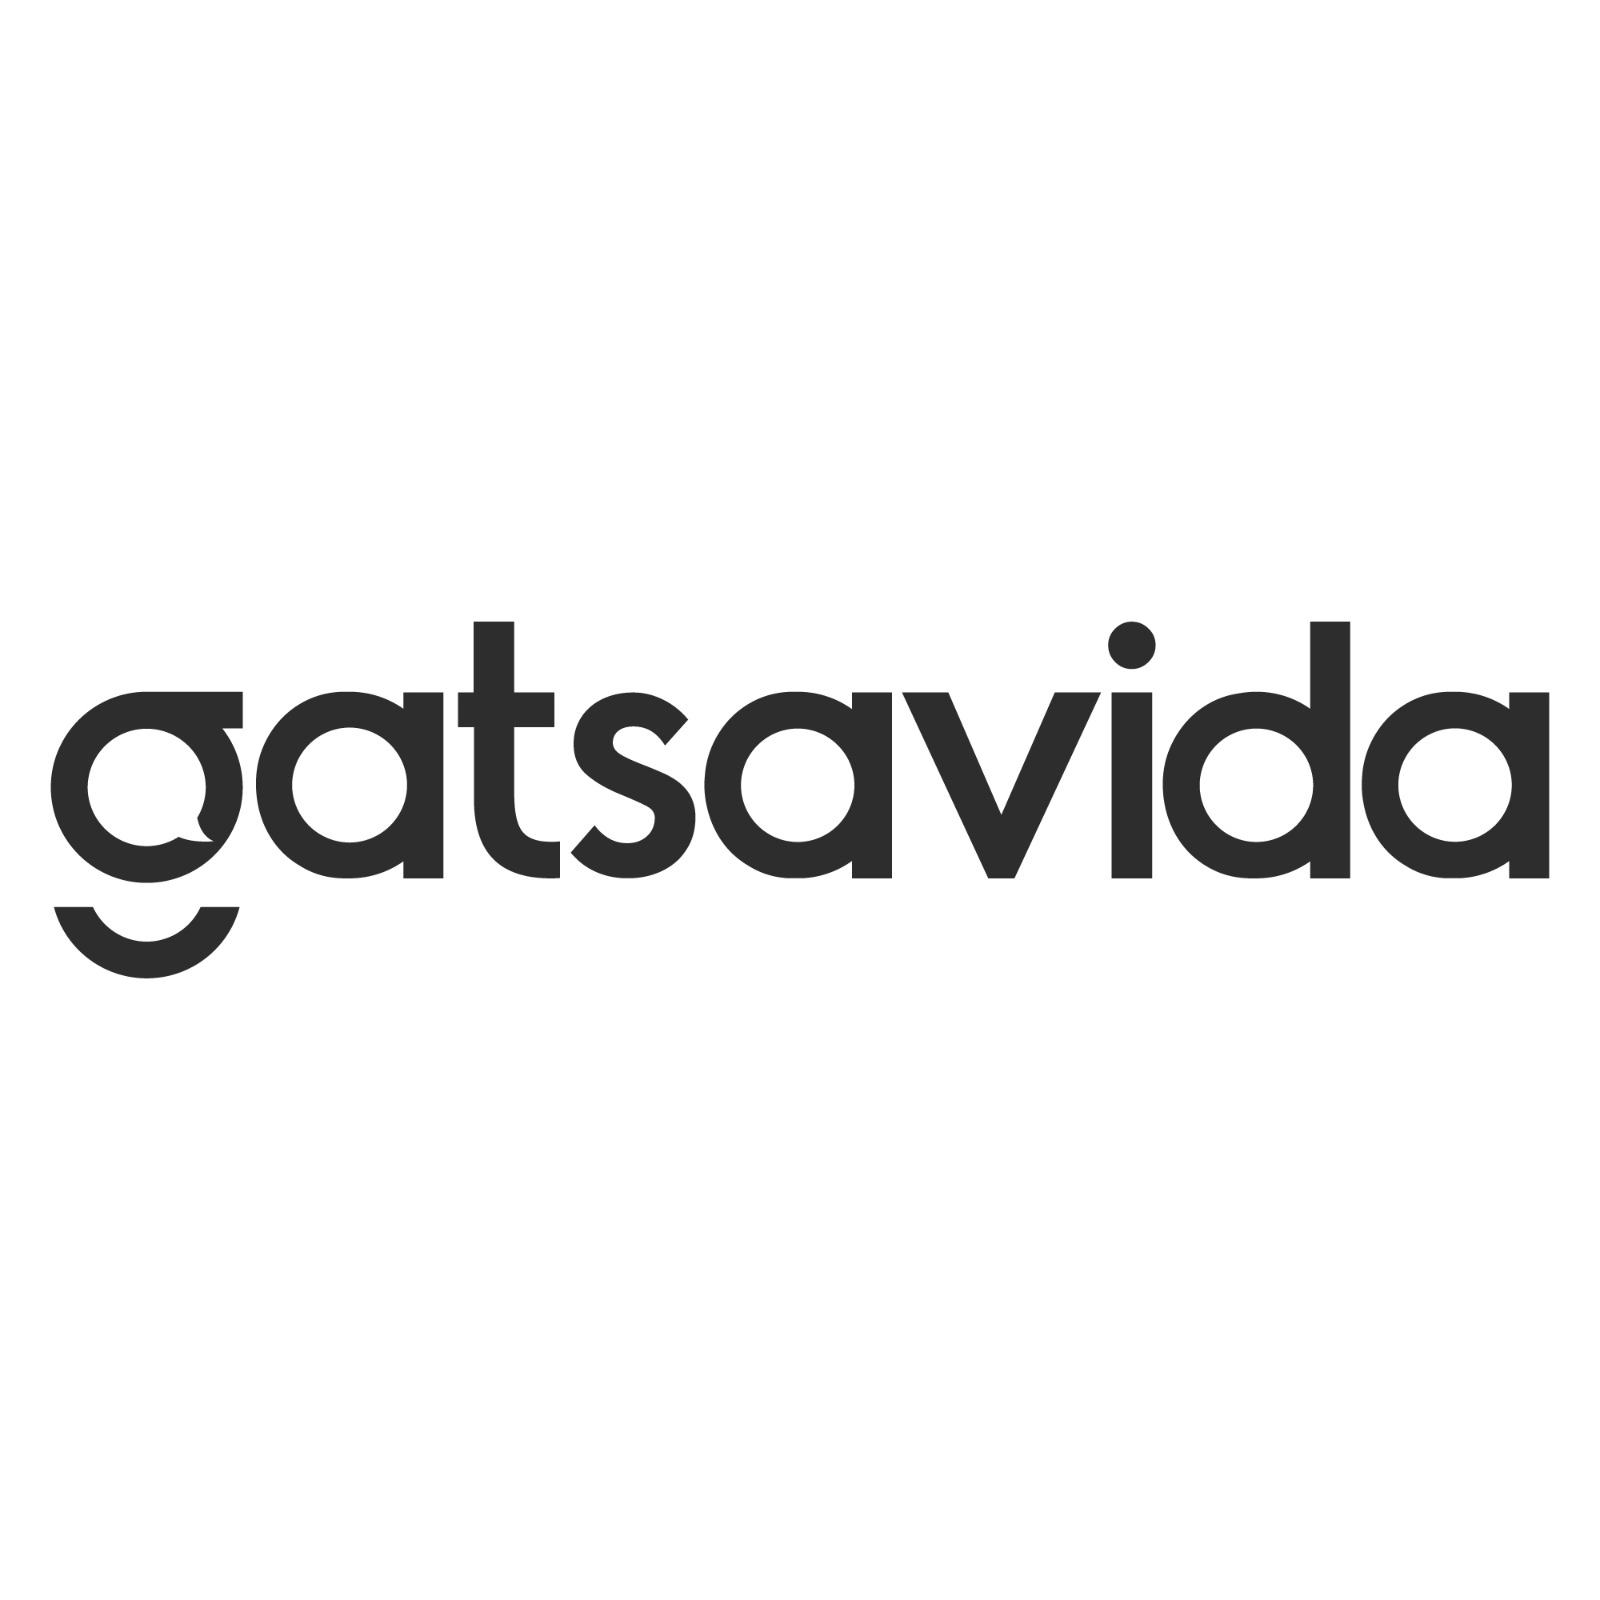 Gatsavida